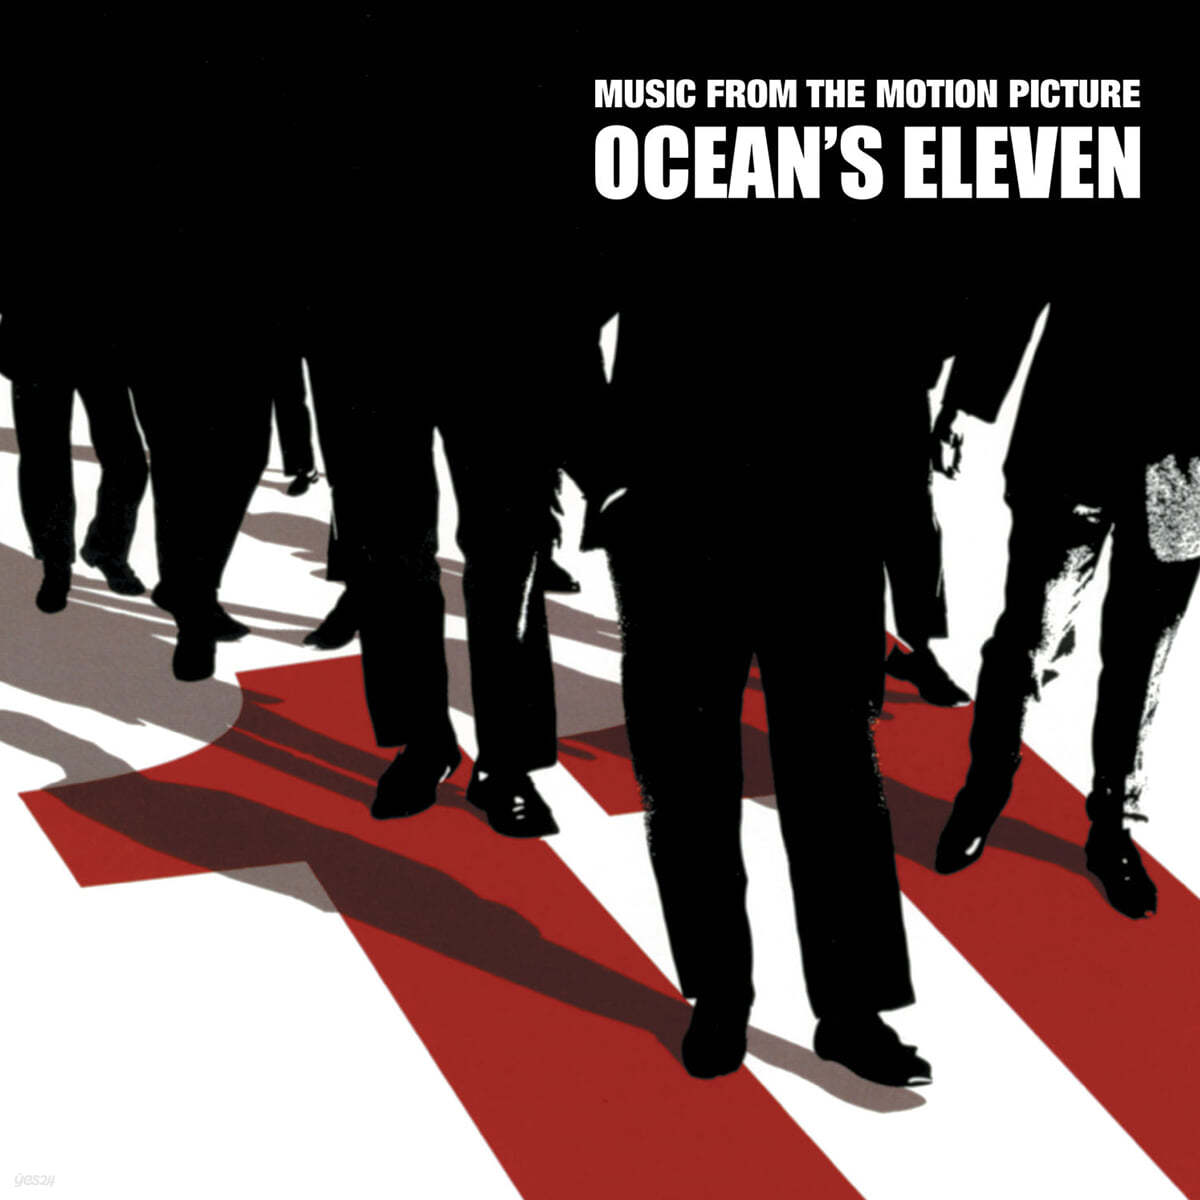 오션스 일레븐 영화음악 (Oceans Eleven OST by David Holmes) [블랙 & 레드 휠 컬러 LP] 